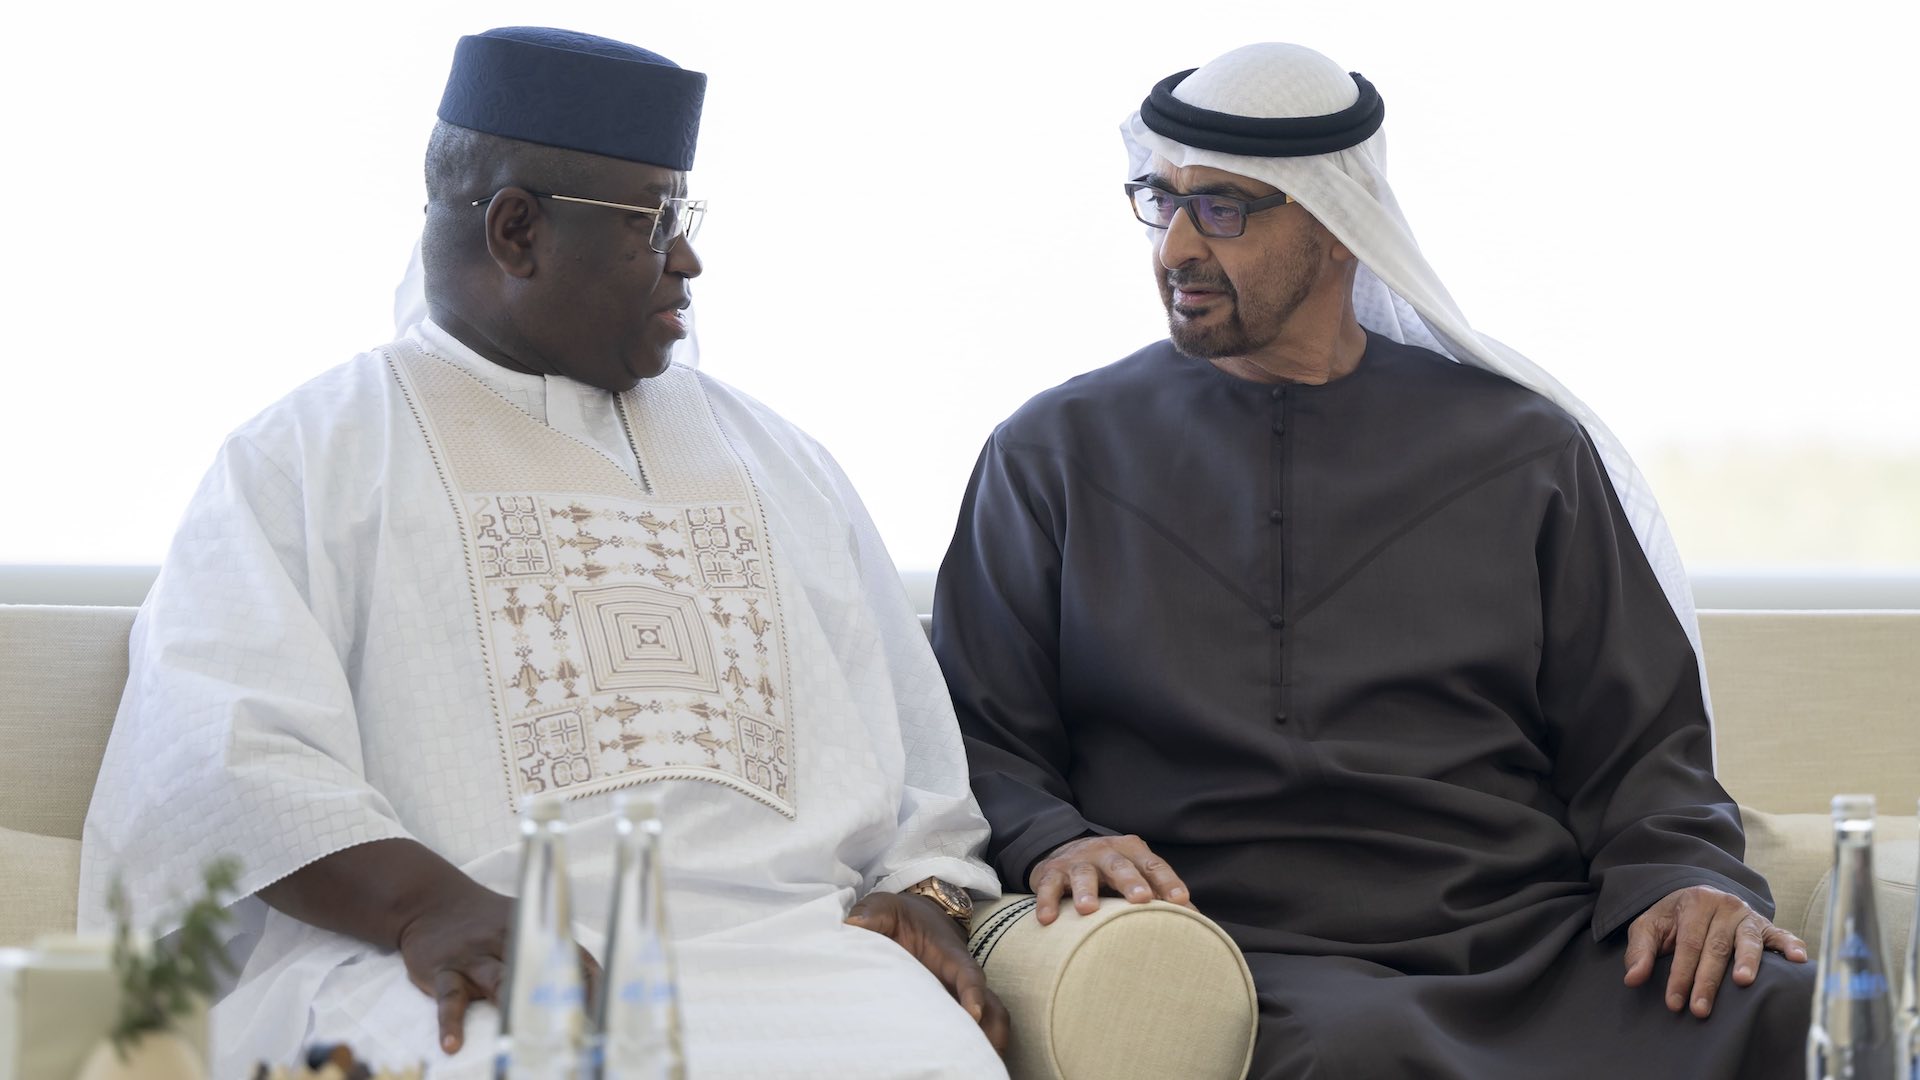 संयुक्त अरब अमीरात और सिएरा लियोन के राष्ट्रपतियों ने द्विपक्षीय संबंधों को बढ़ावा देने के लिए मुलाकात की